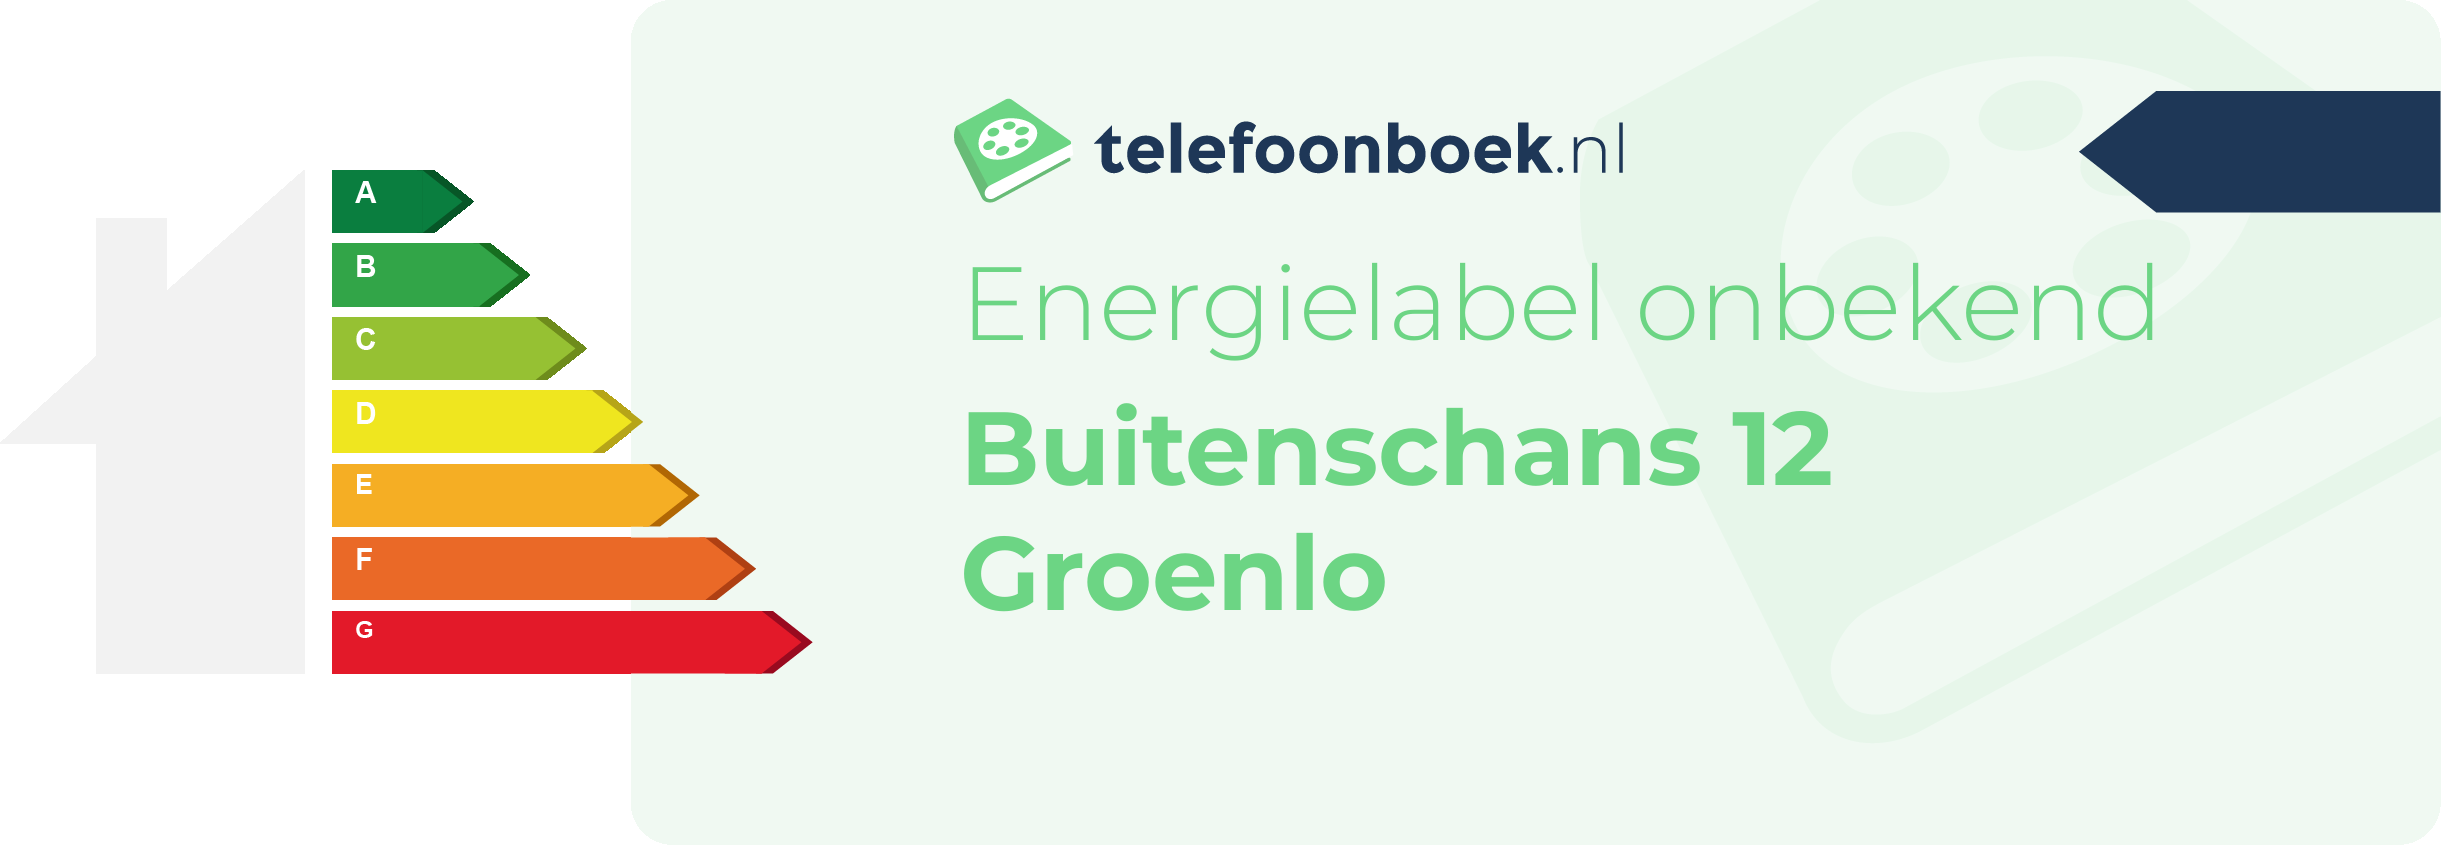 Energielabel Buitenschans 12 Groenlo